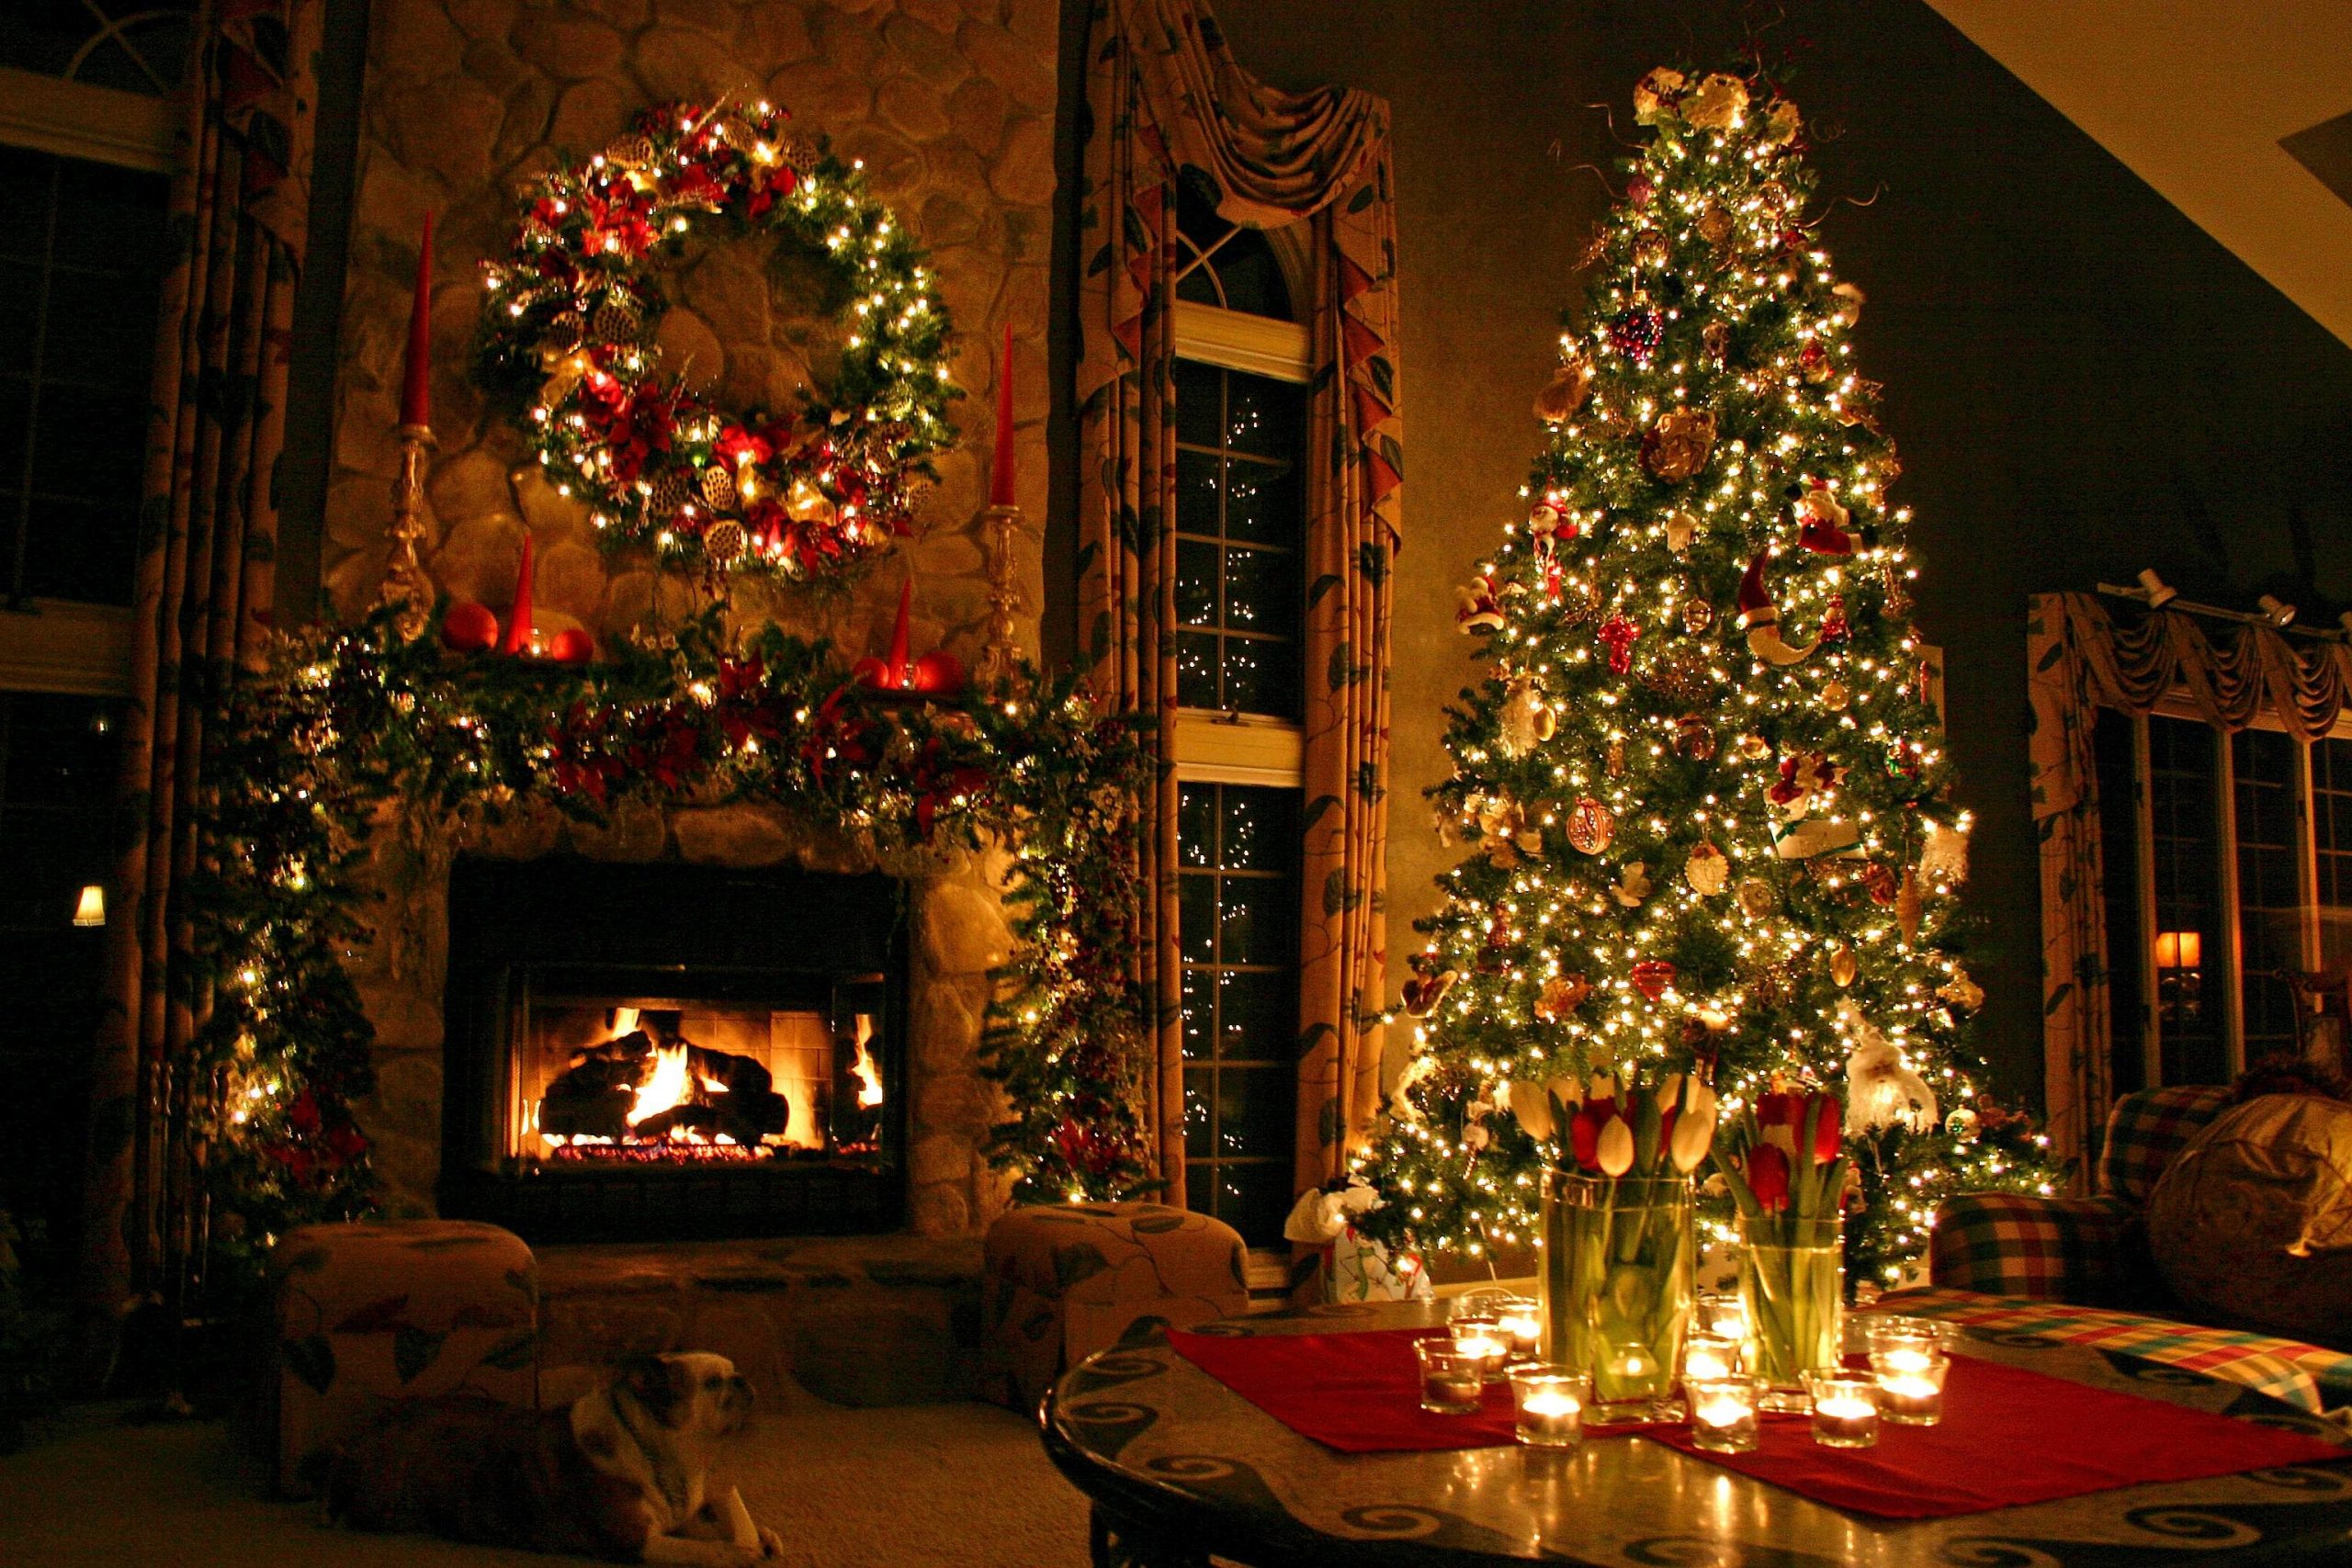 Ý nghĩa cây thông Noel: Cây thông Noel là một biểu tượng quen thuộc trong mùa lễ hội Giáng sinh. Ngoài việc trang trí, cây thông còn mang trong mình ý nghĩa sâu sắc của sự hy vọng và tình yêu thương. Cùng khám phá thêm về ý nghĩa đằng sau loài cây mang niềm vui và niềm tin tuyệt vời này.